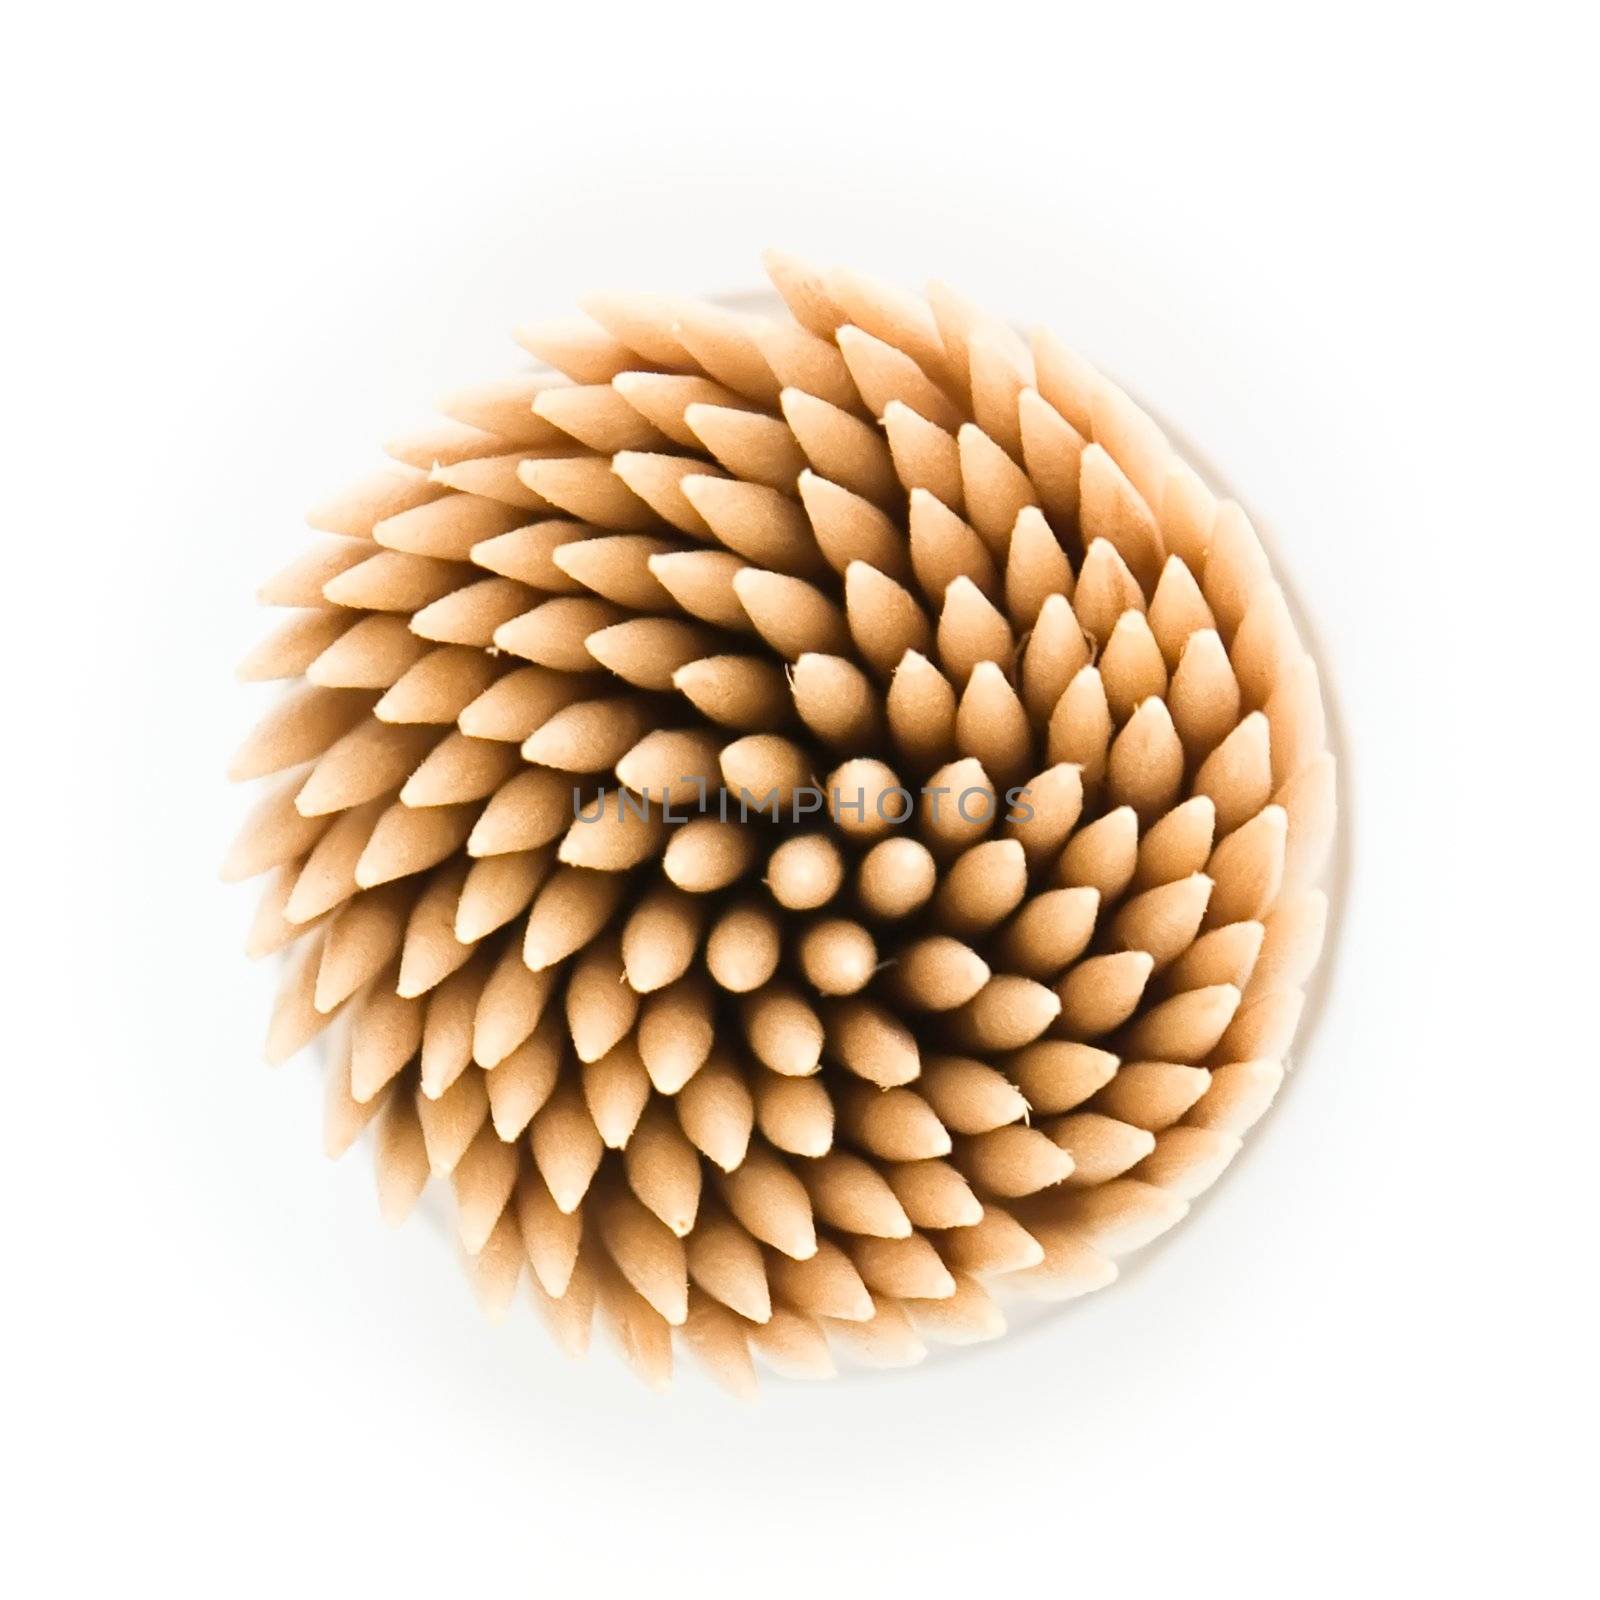 toothpicks by stepanov